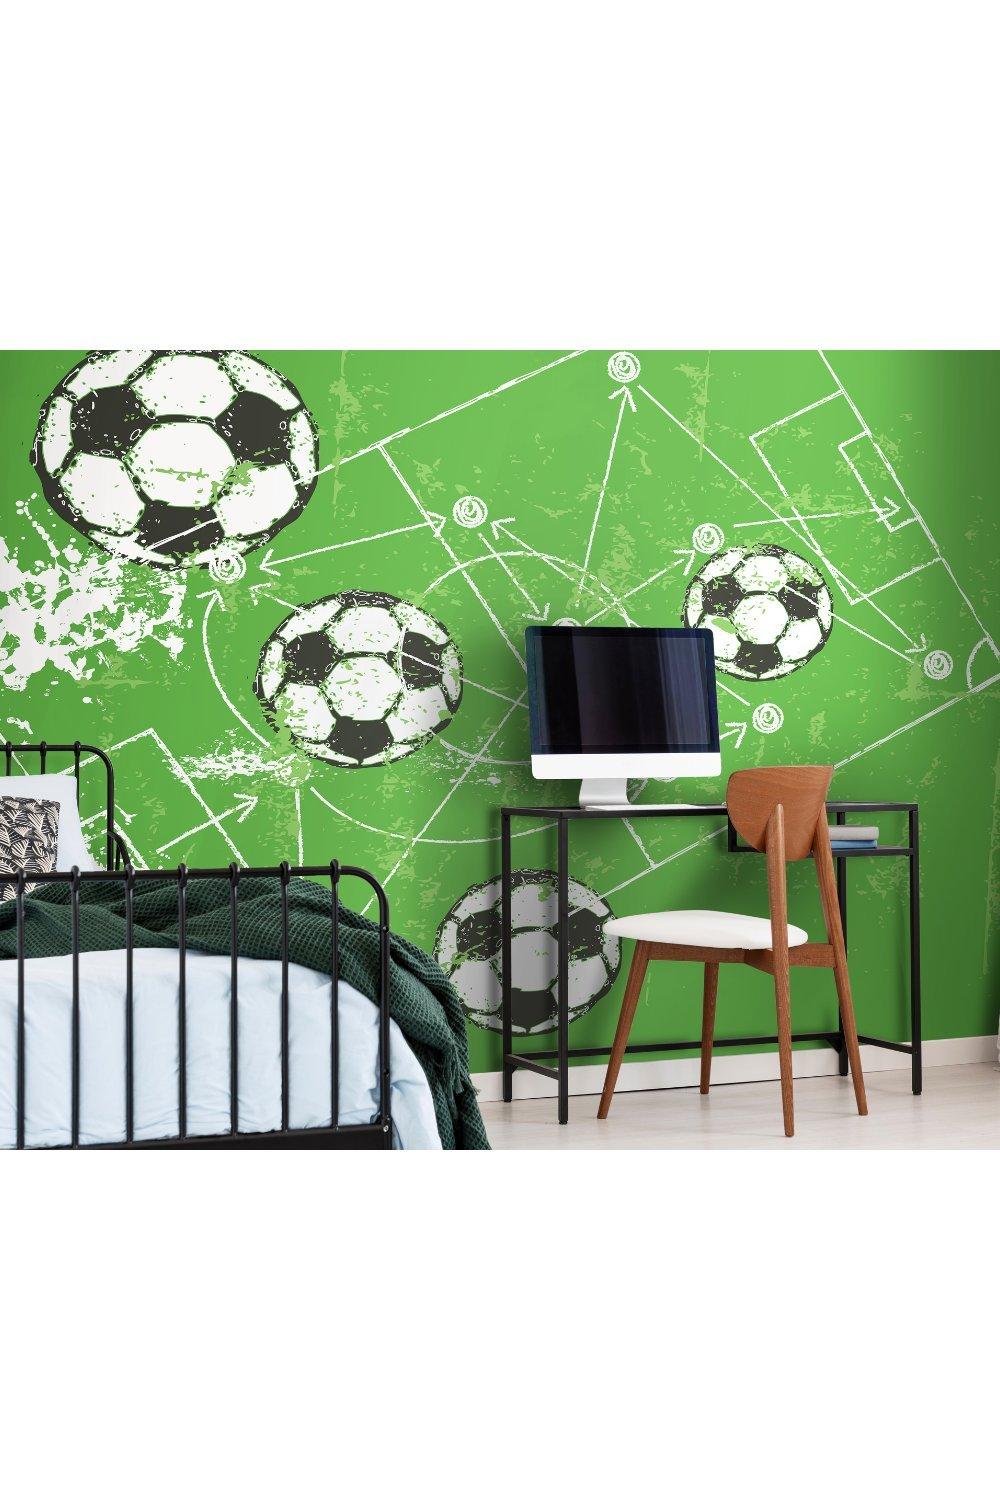 Football Grunge Texture Green Matt Smooth Paste the Wall 300cm wide x 240cm high